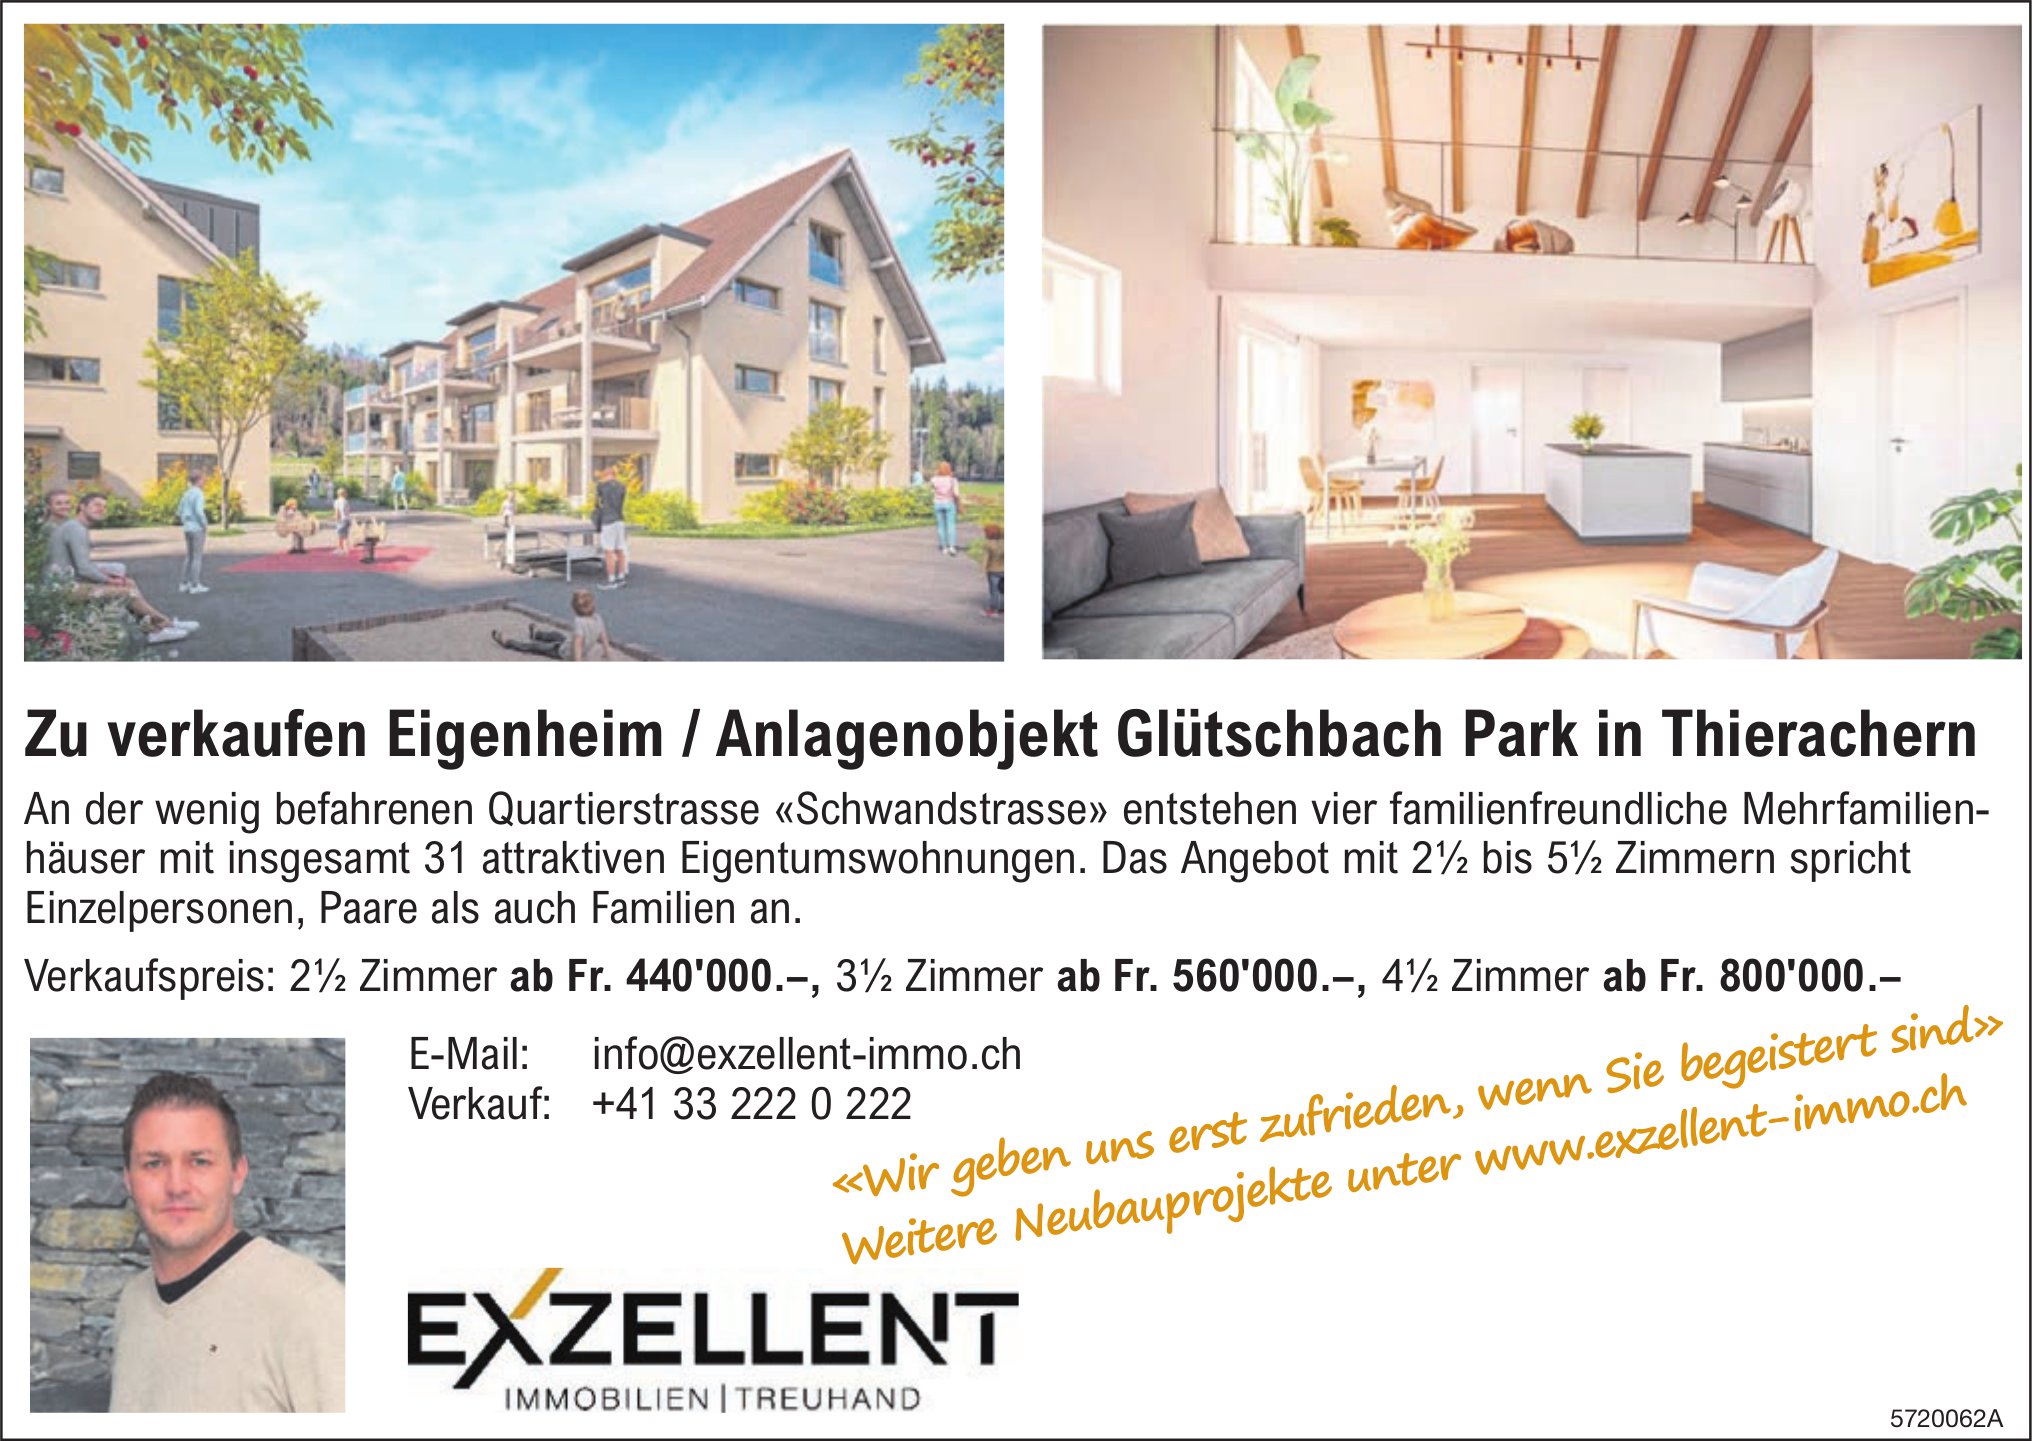 Exzellent Immobilen / Treuhand - Eigenheim / Anlagenobjekt Glütschbach Park in Thierachern, zu verkaufen